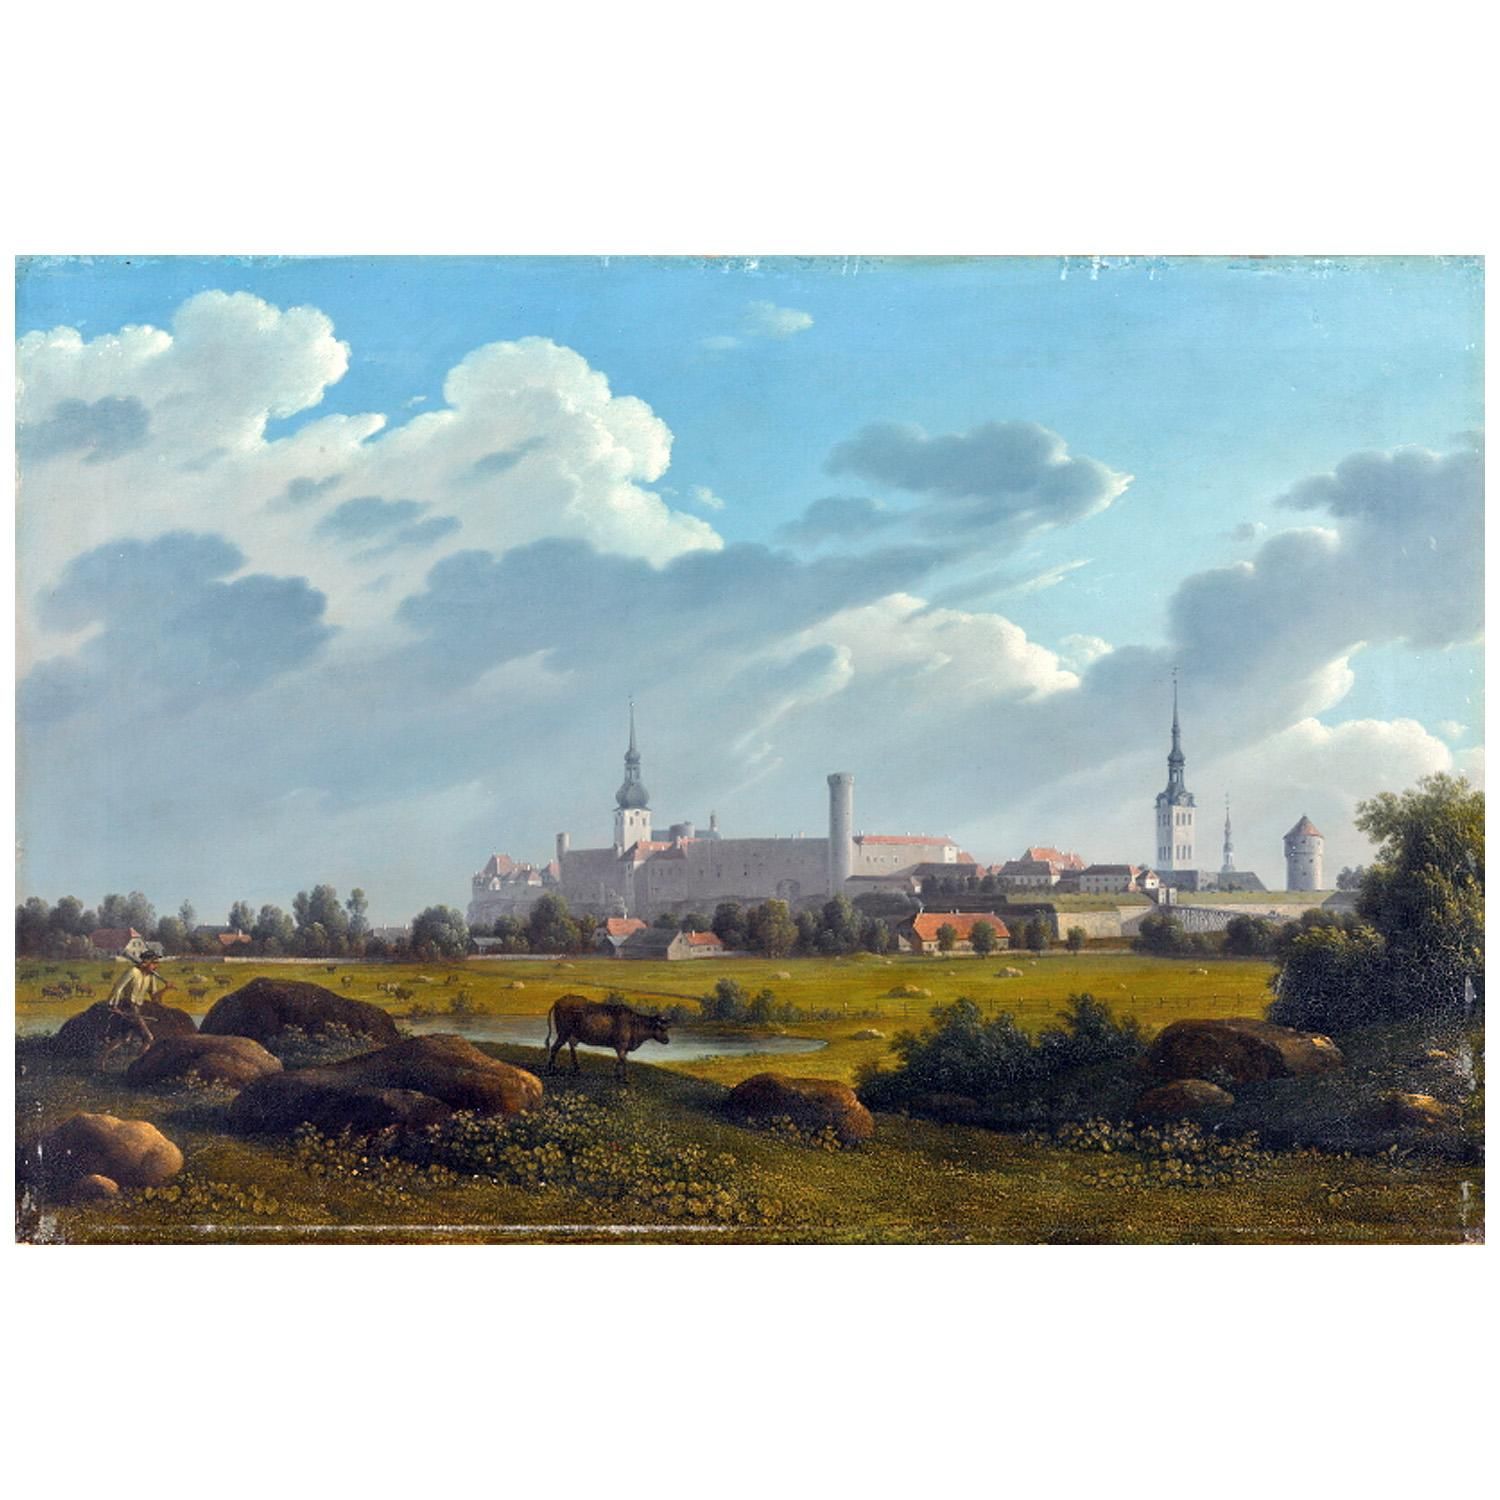 Karl von Kügelgen. Blick auf Tallinn. 1827. EKM Tallinn